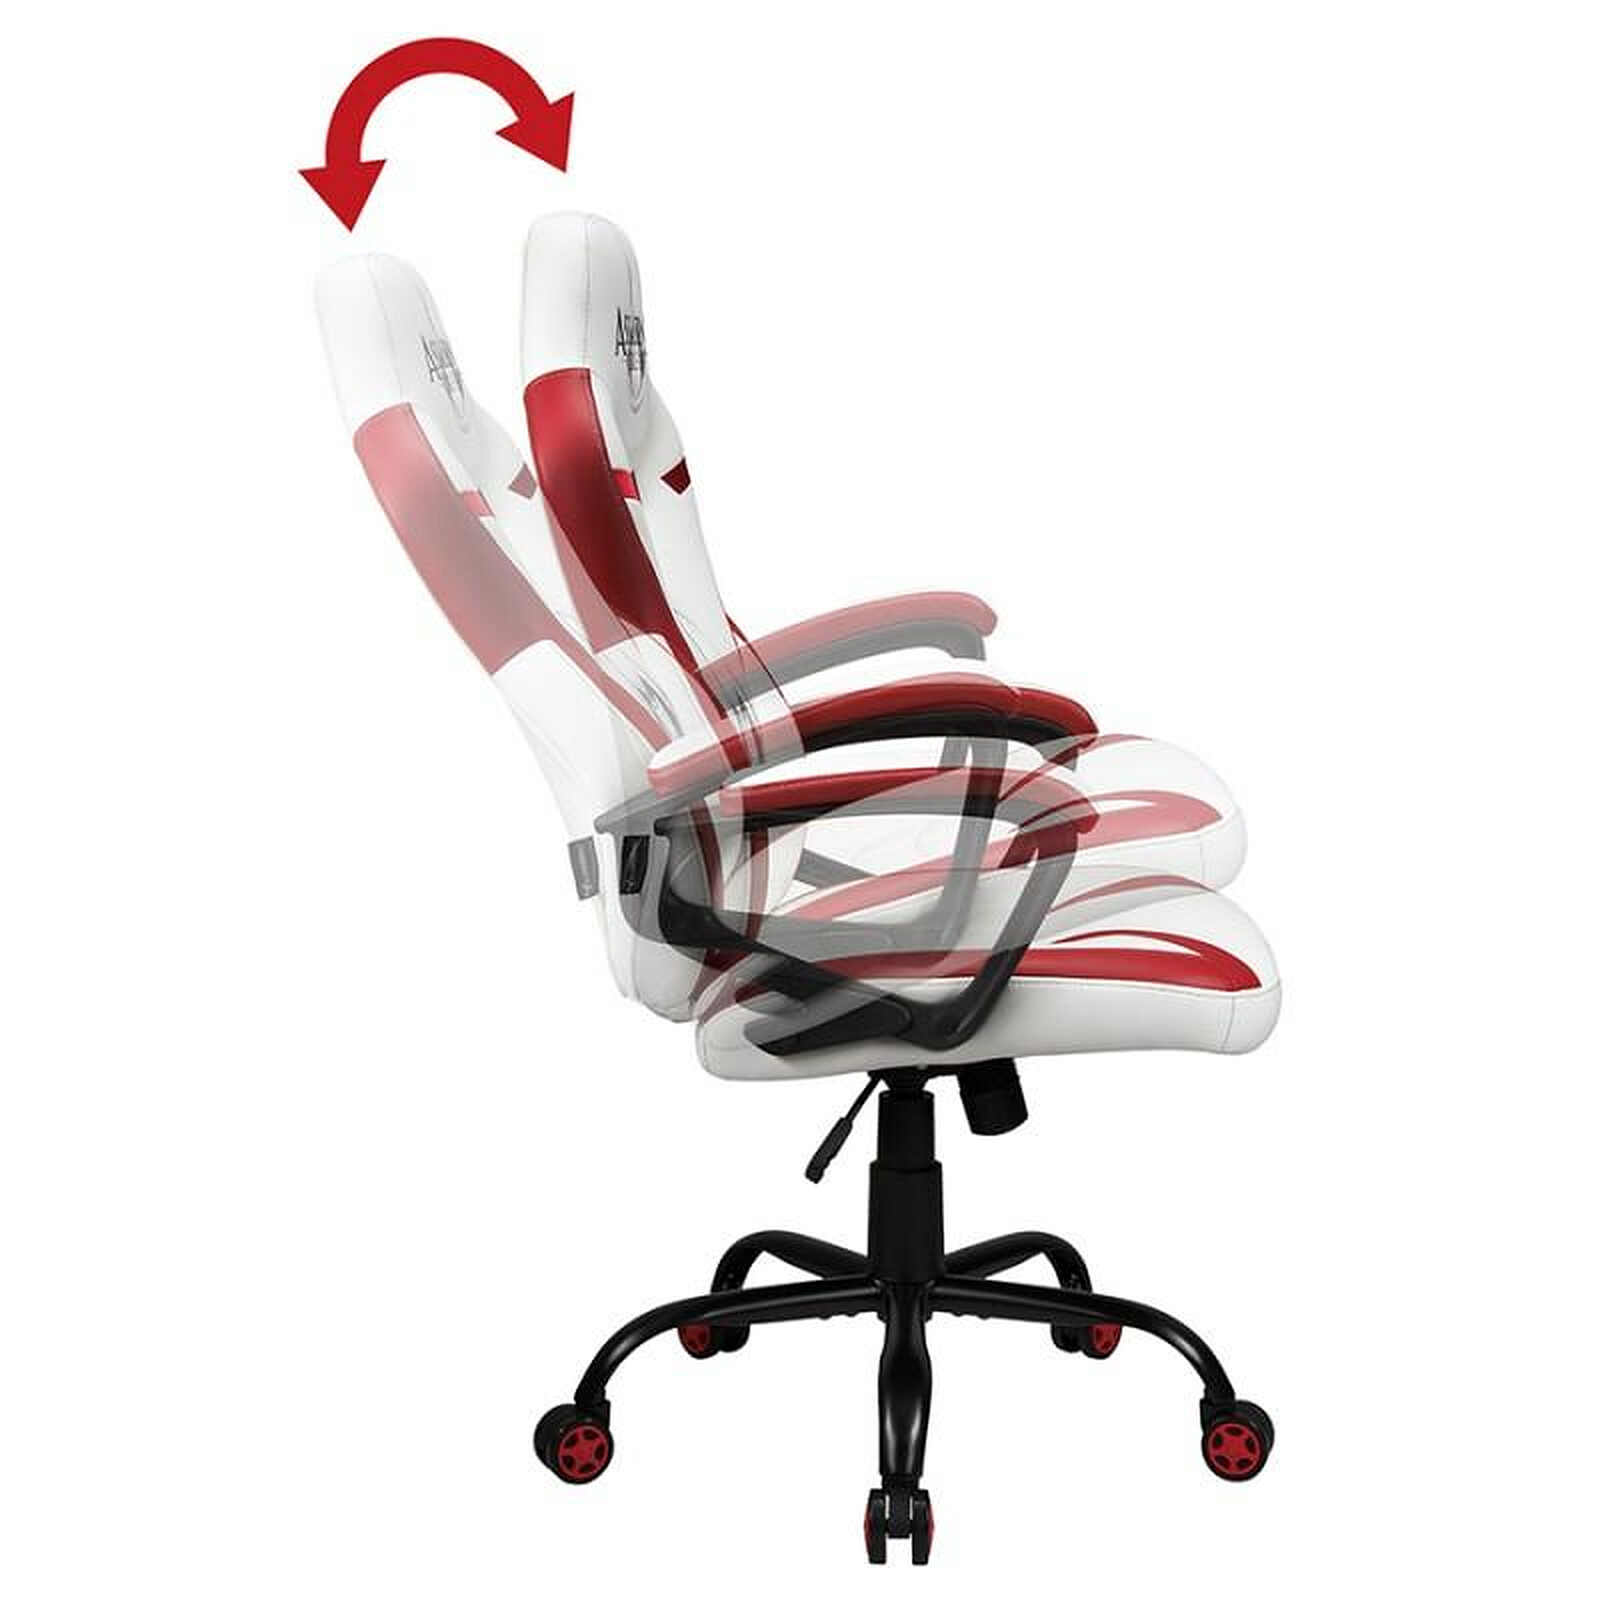 La chaise ergonomique YouToo avec assise en cuir Base blanche